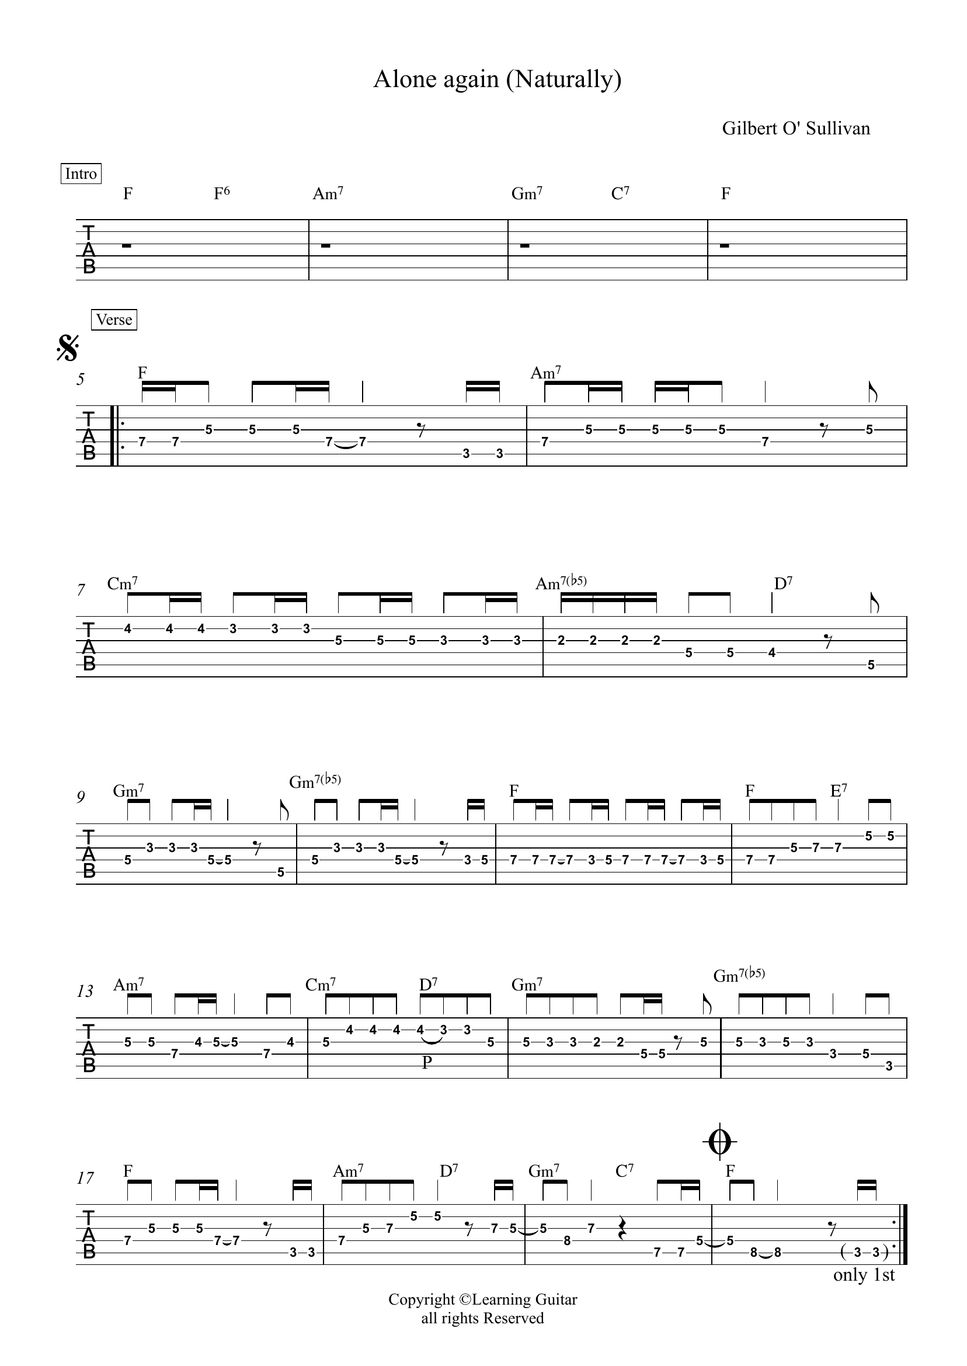 Gilbert O' Sullivan - Alone again (Naturally) Guitar Melody TAB Sheets